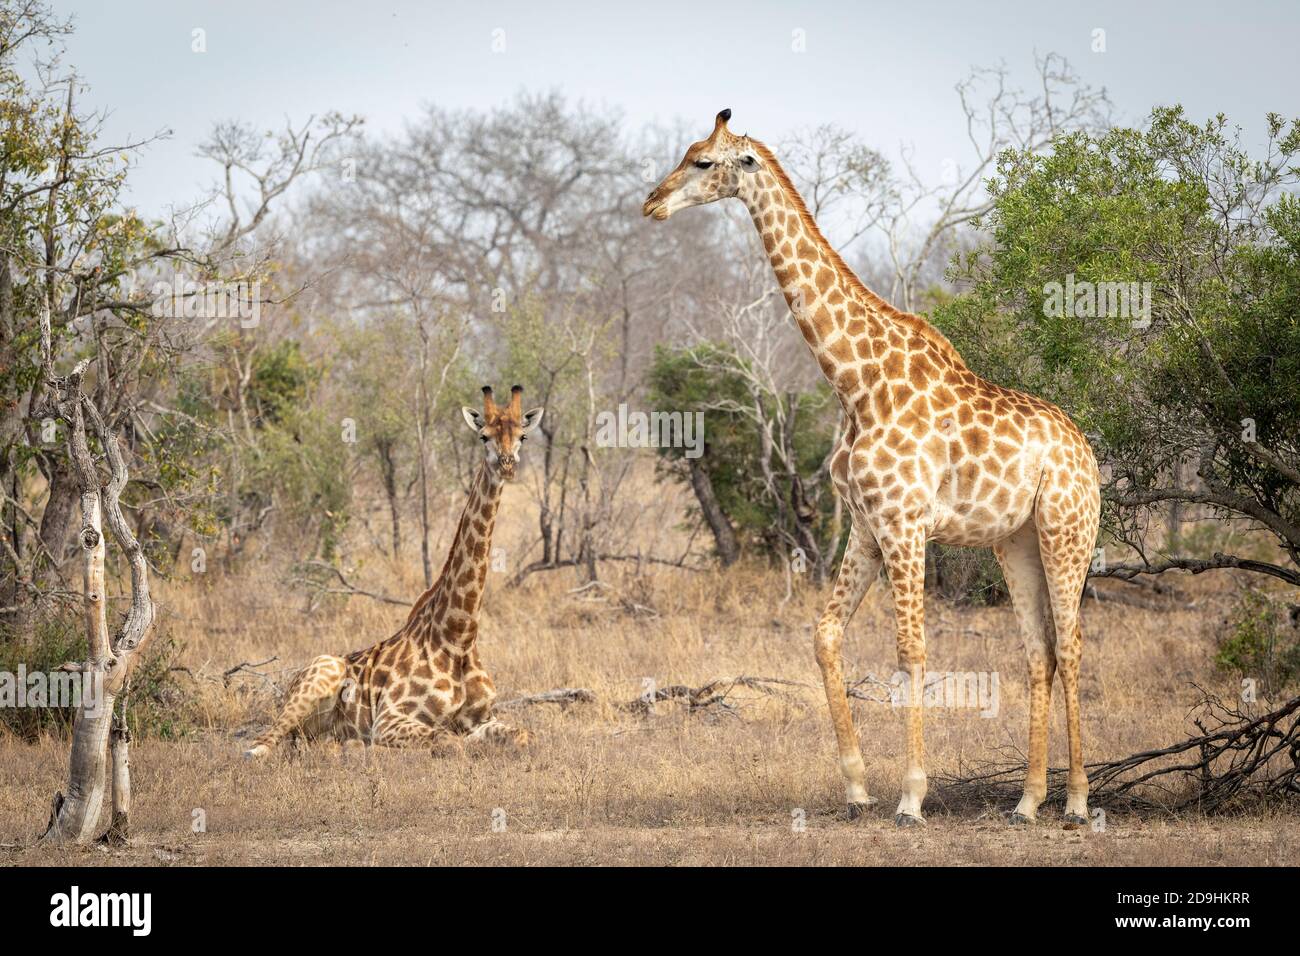 Girafe femelle debout et une autre girafe assise dans une brousse sèche À Kruger Park en Afrique du Sud Banque D'Images